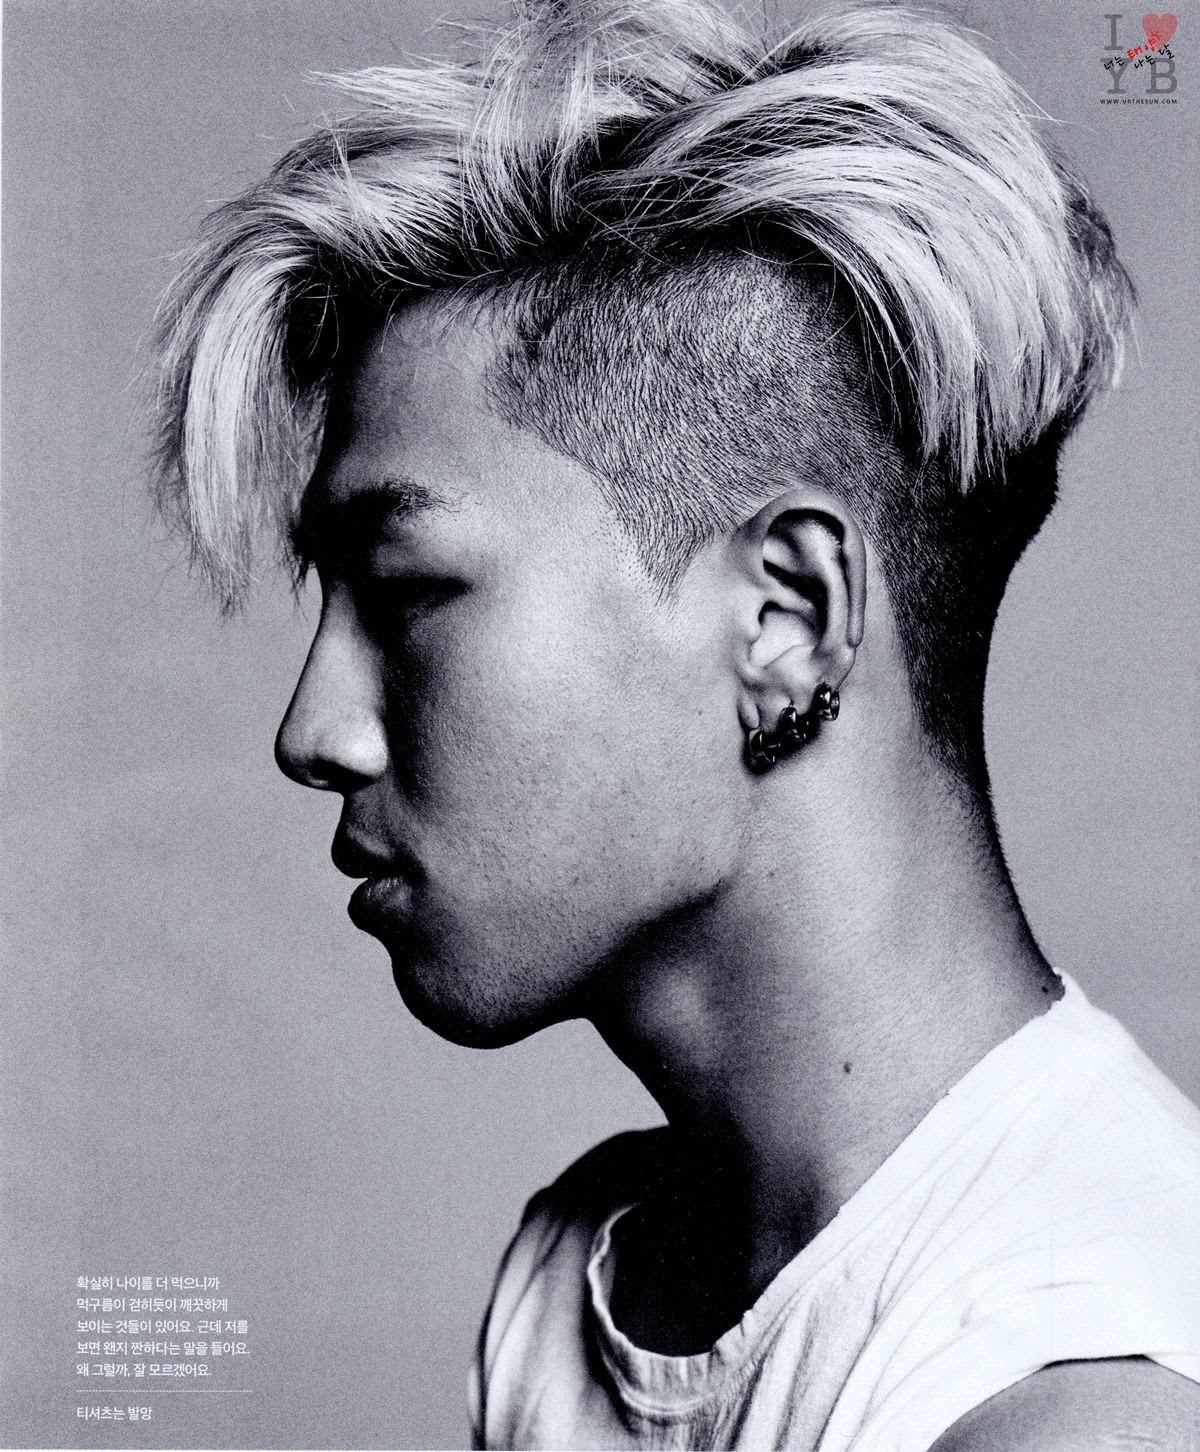 [20/6/2014][Pho] Taeyang trên tạp chí GQ Korea Taeyang_gq_july_2014_scans_004